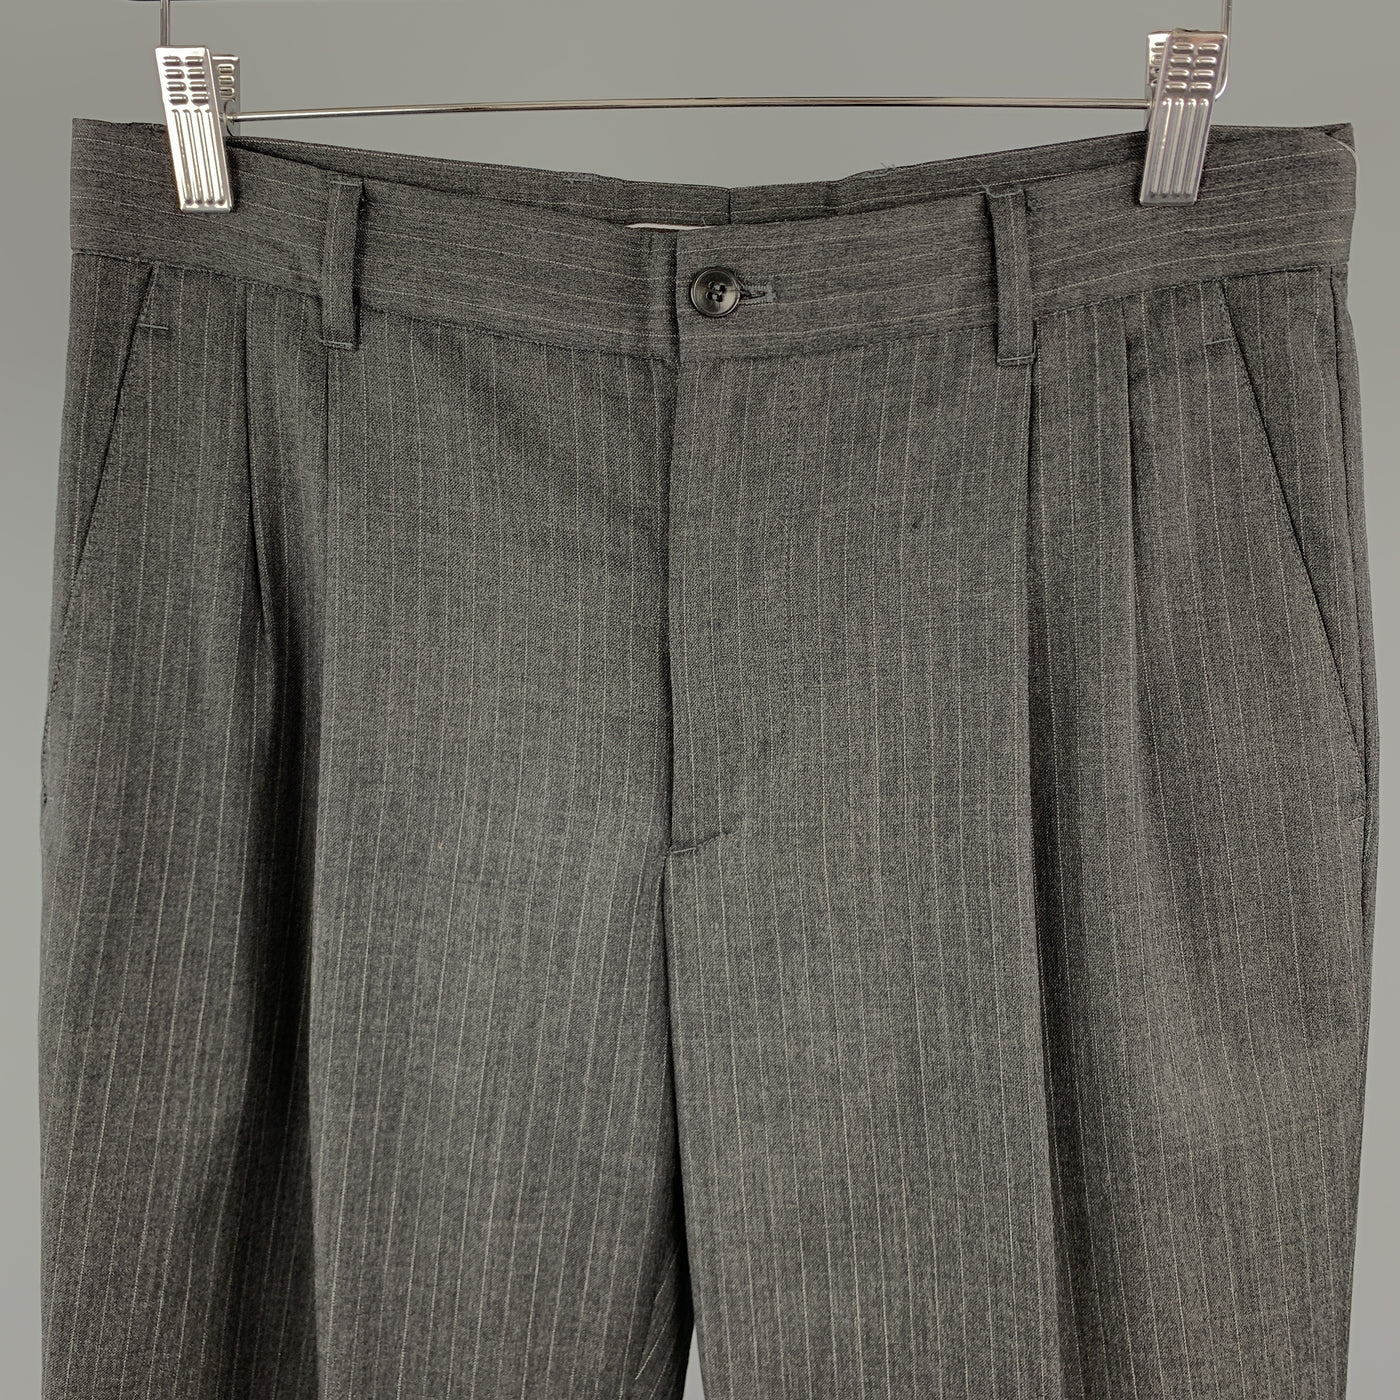 MIU MIU Size 30 Stripe Dark Gray Wool 31 Pleated Dress Pants